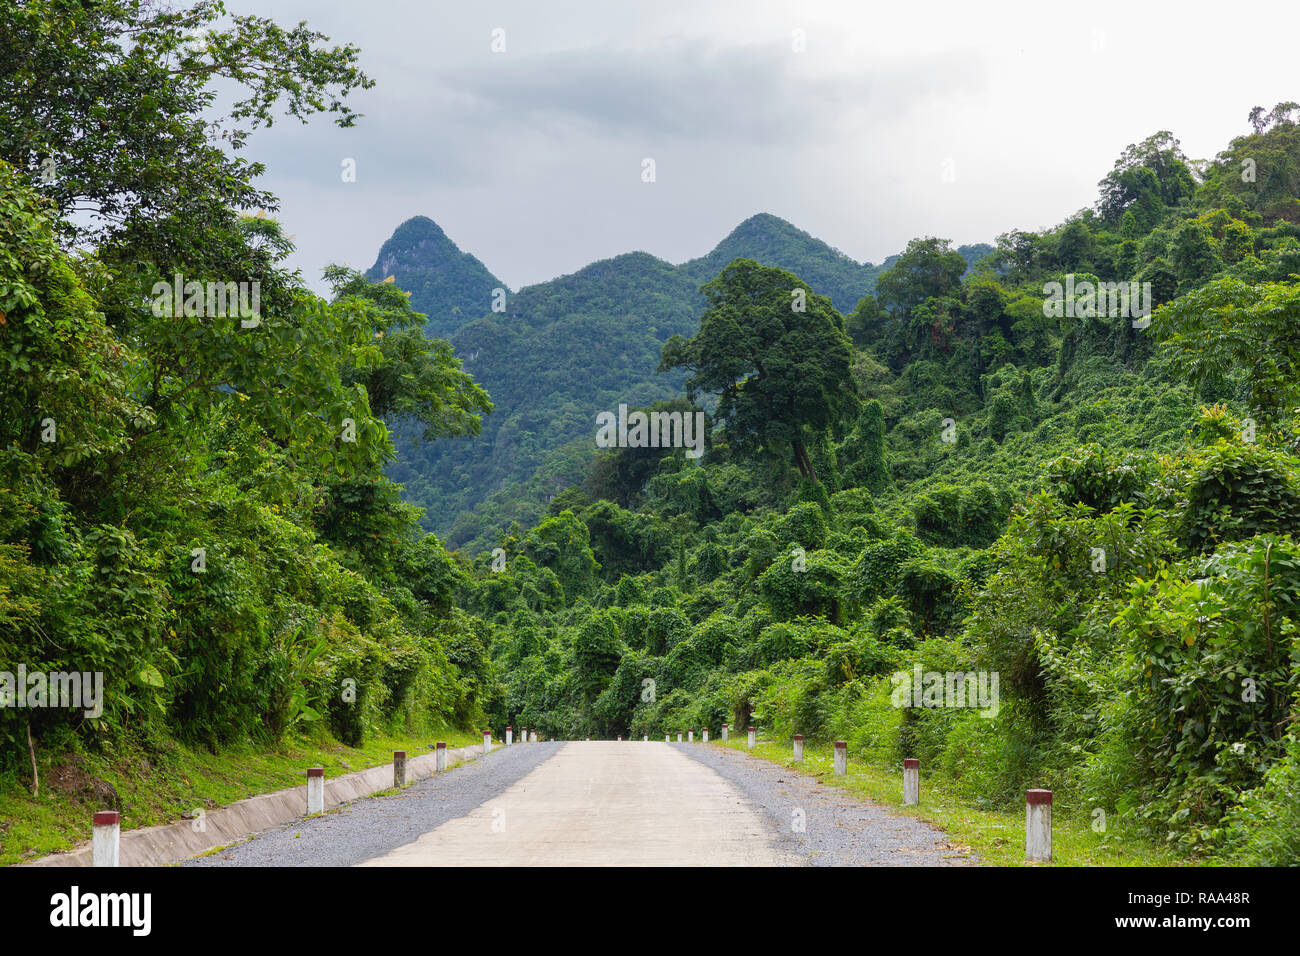 Lush jungle forest in Phong Nha-Ke Bang National Park, Phong Nha, Vietnam, Asia Stock Photo